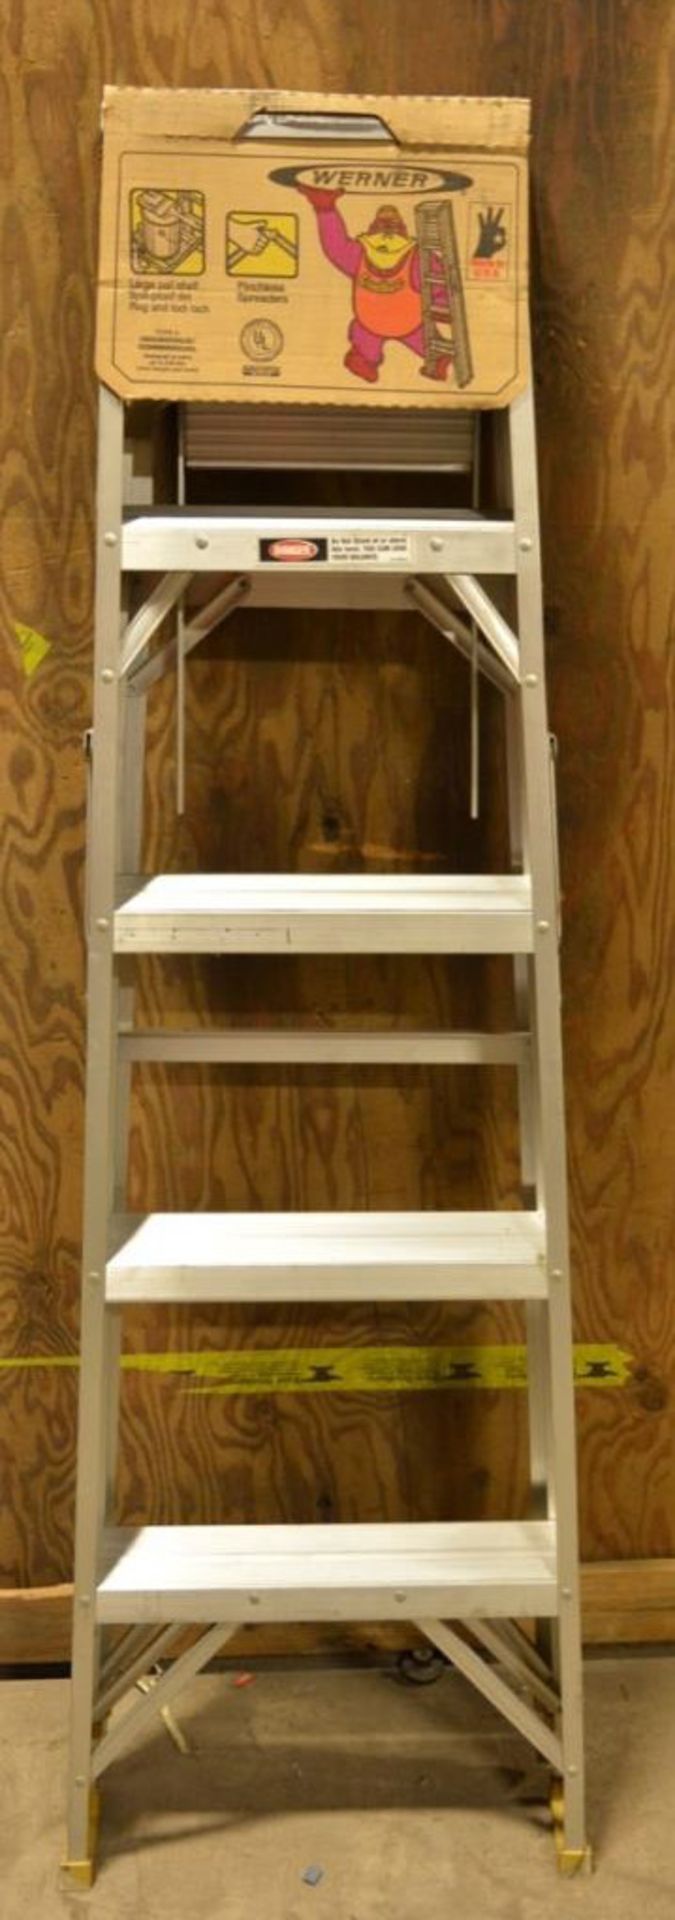 Werner #365 5' Aluminum Step Ladder